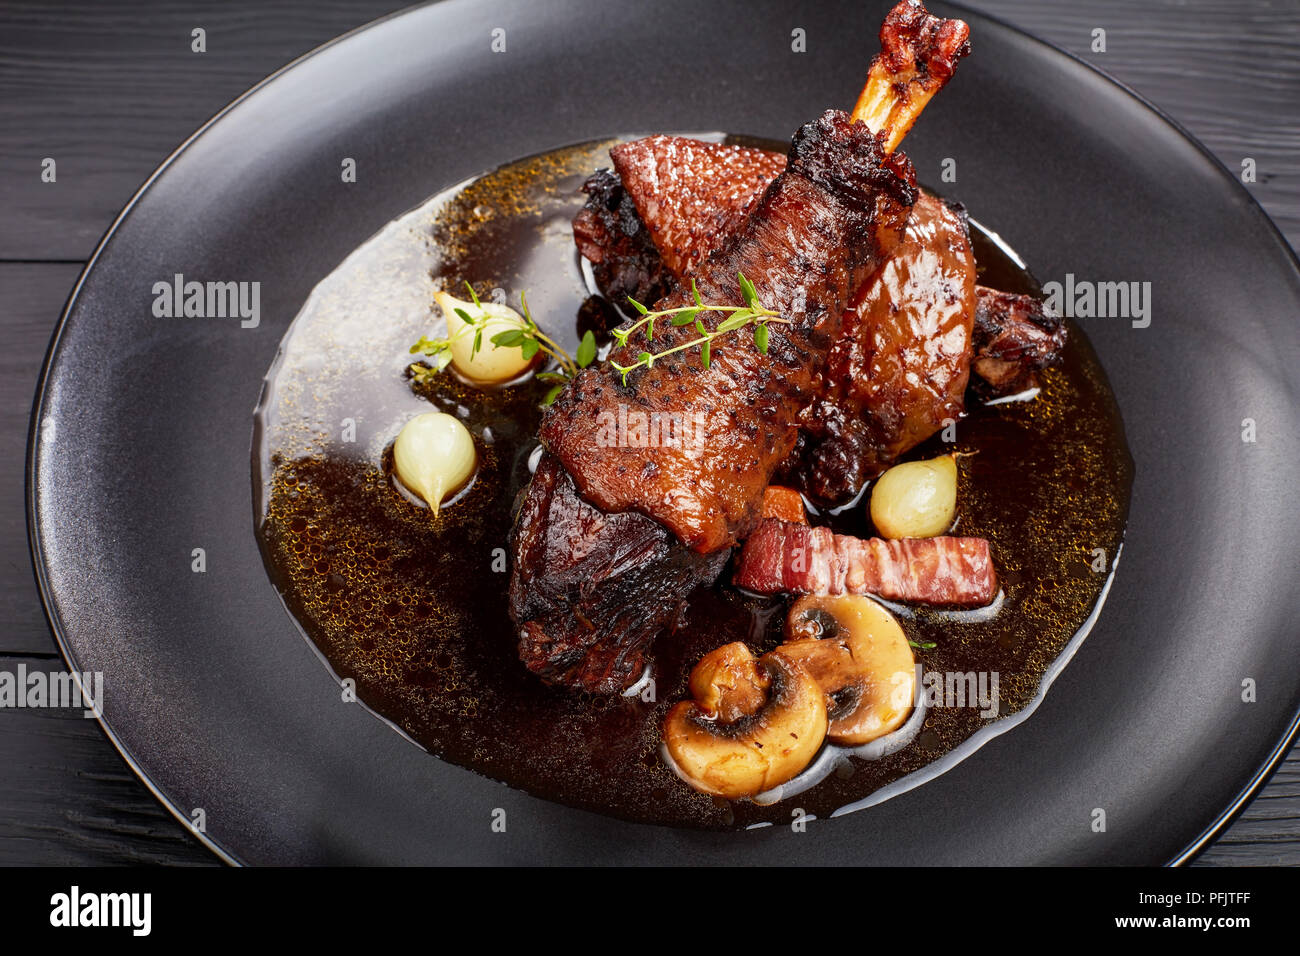 Une partie de ragoût de poulet savoureux - braisé de cuisse et le pilon avec le vin, les herbes, les champignons et les légumes servis sur la plaque noire sur la table en bois, festiv Banque D'Images